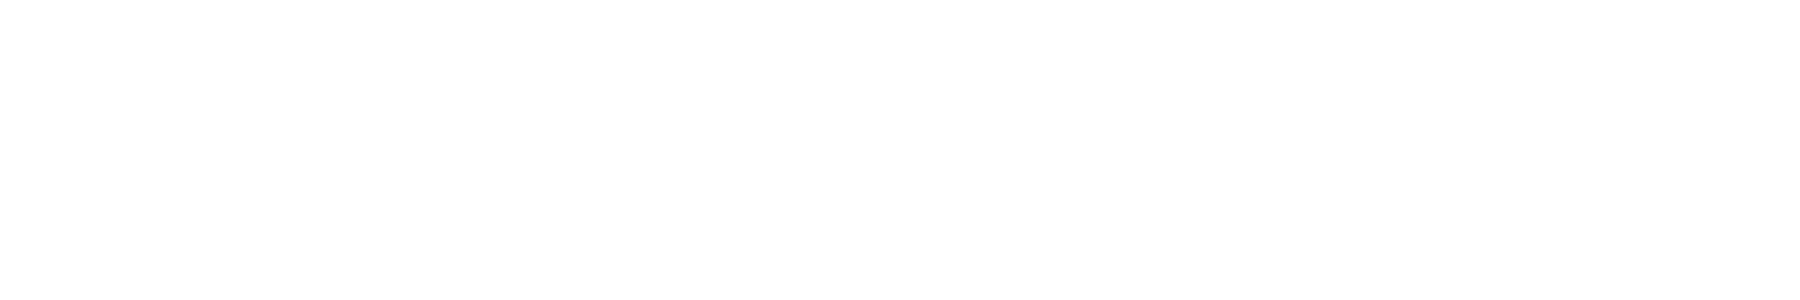 マグロハウス_logo_01